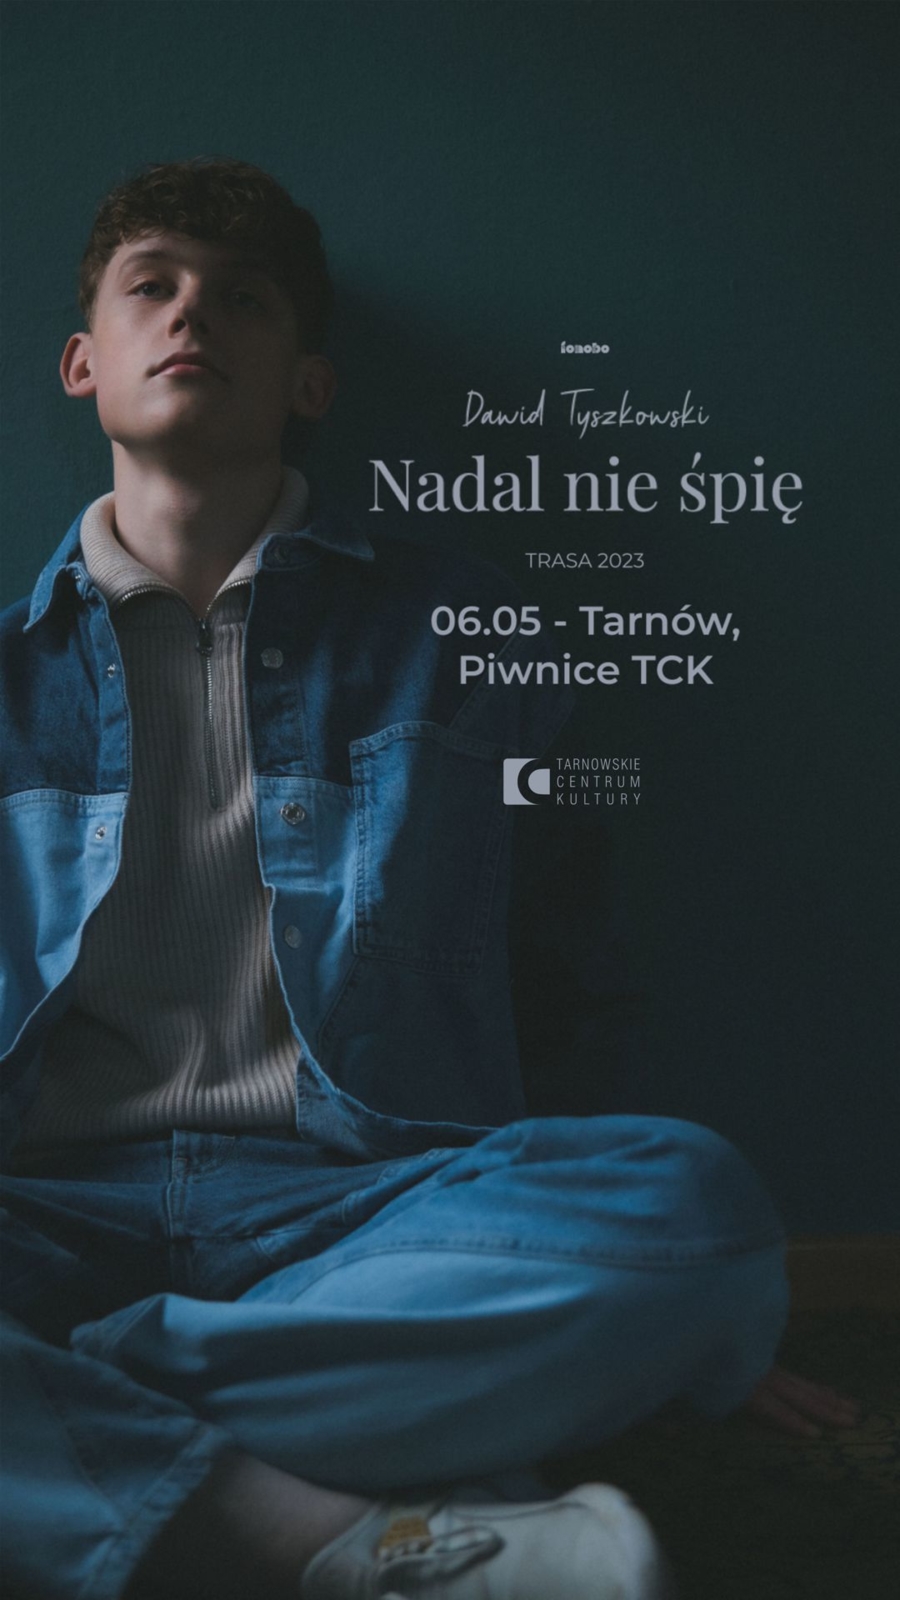 Plakat koncertu Dawida Tyszkowskiego